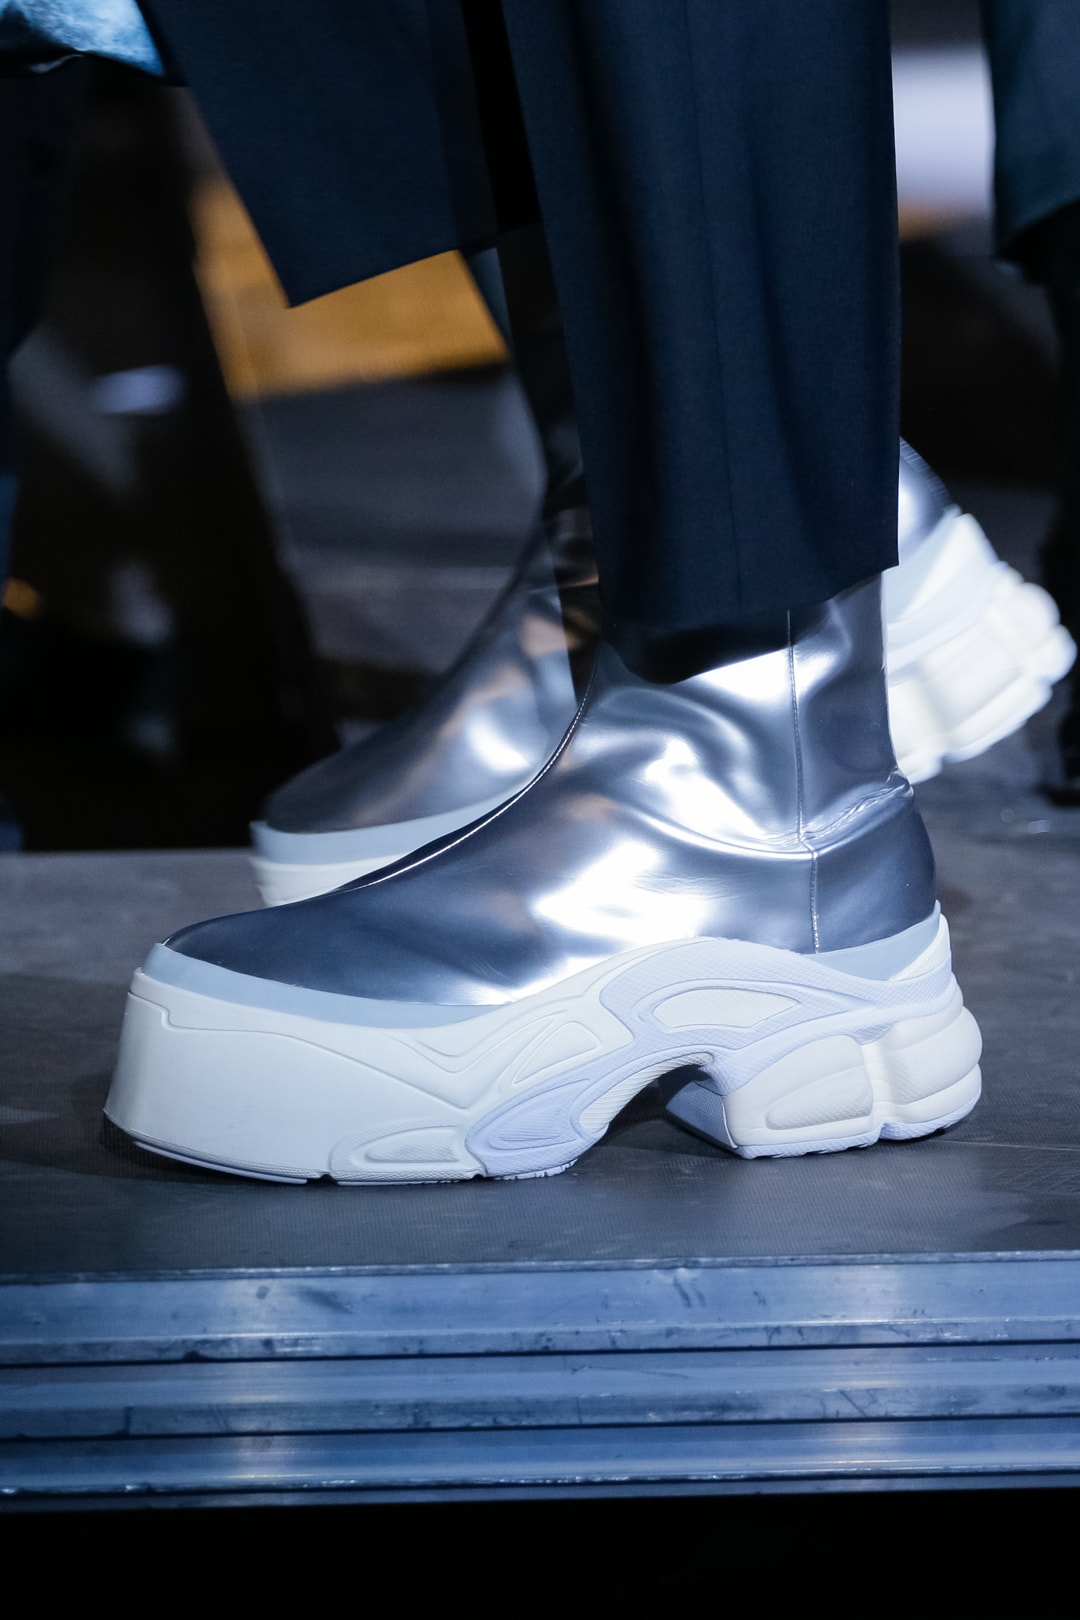 adidas by Raf Simons Spring/Summer 2019 Footwear sneakers leather platform boot Ozweego Detroit Runner paris fashion week runway